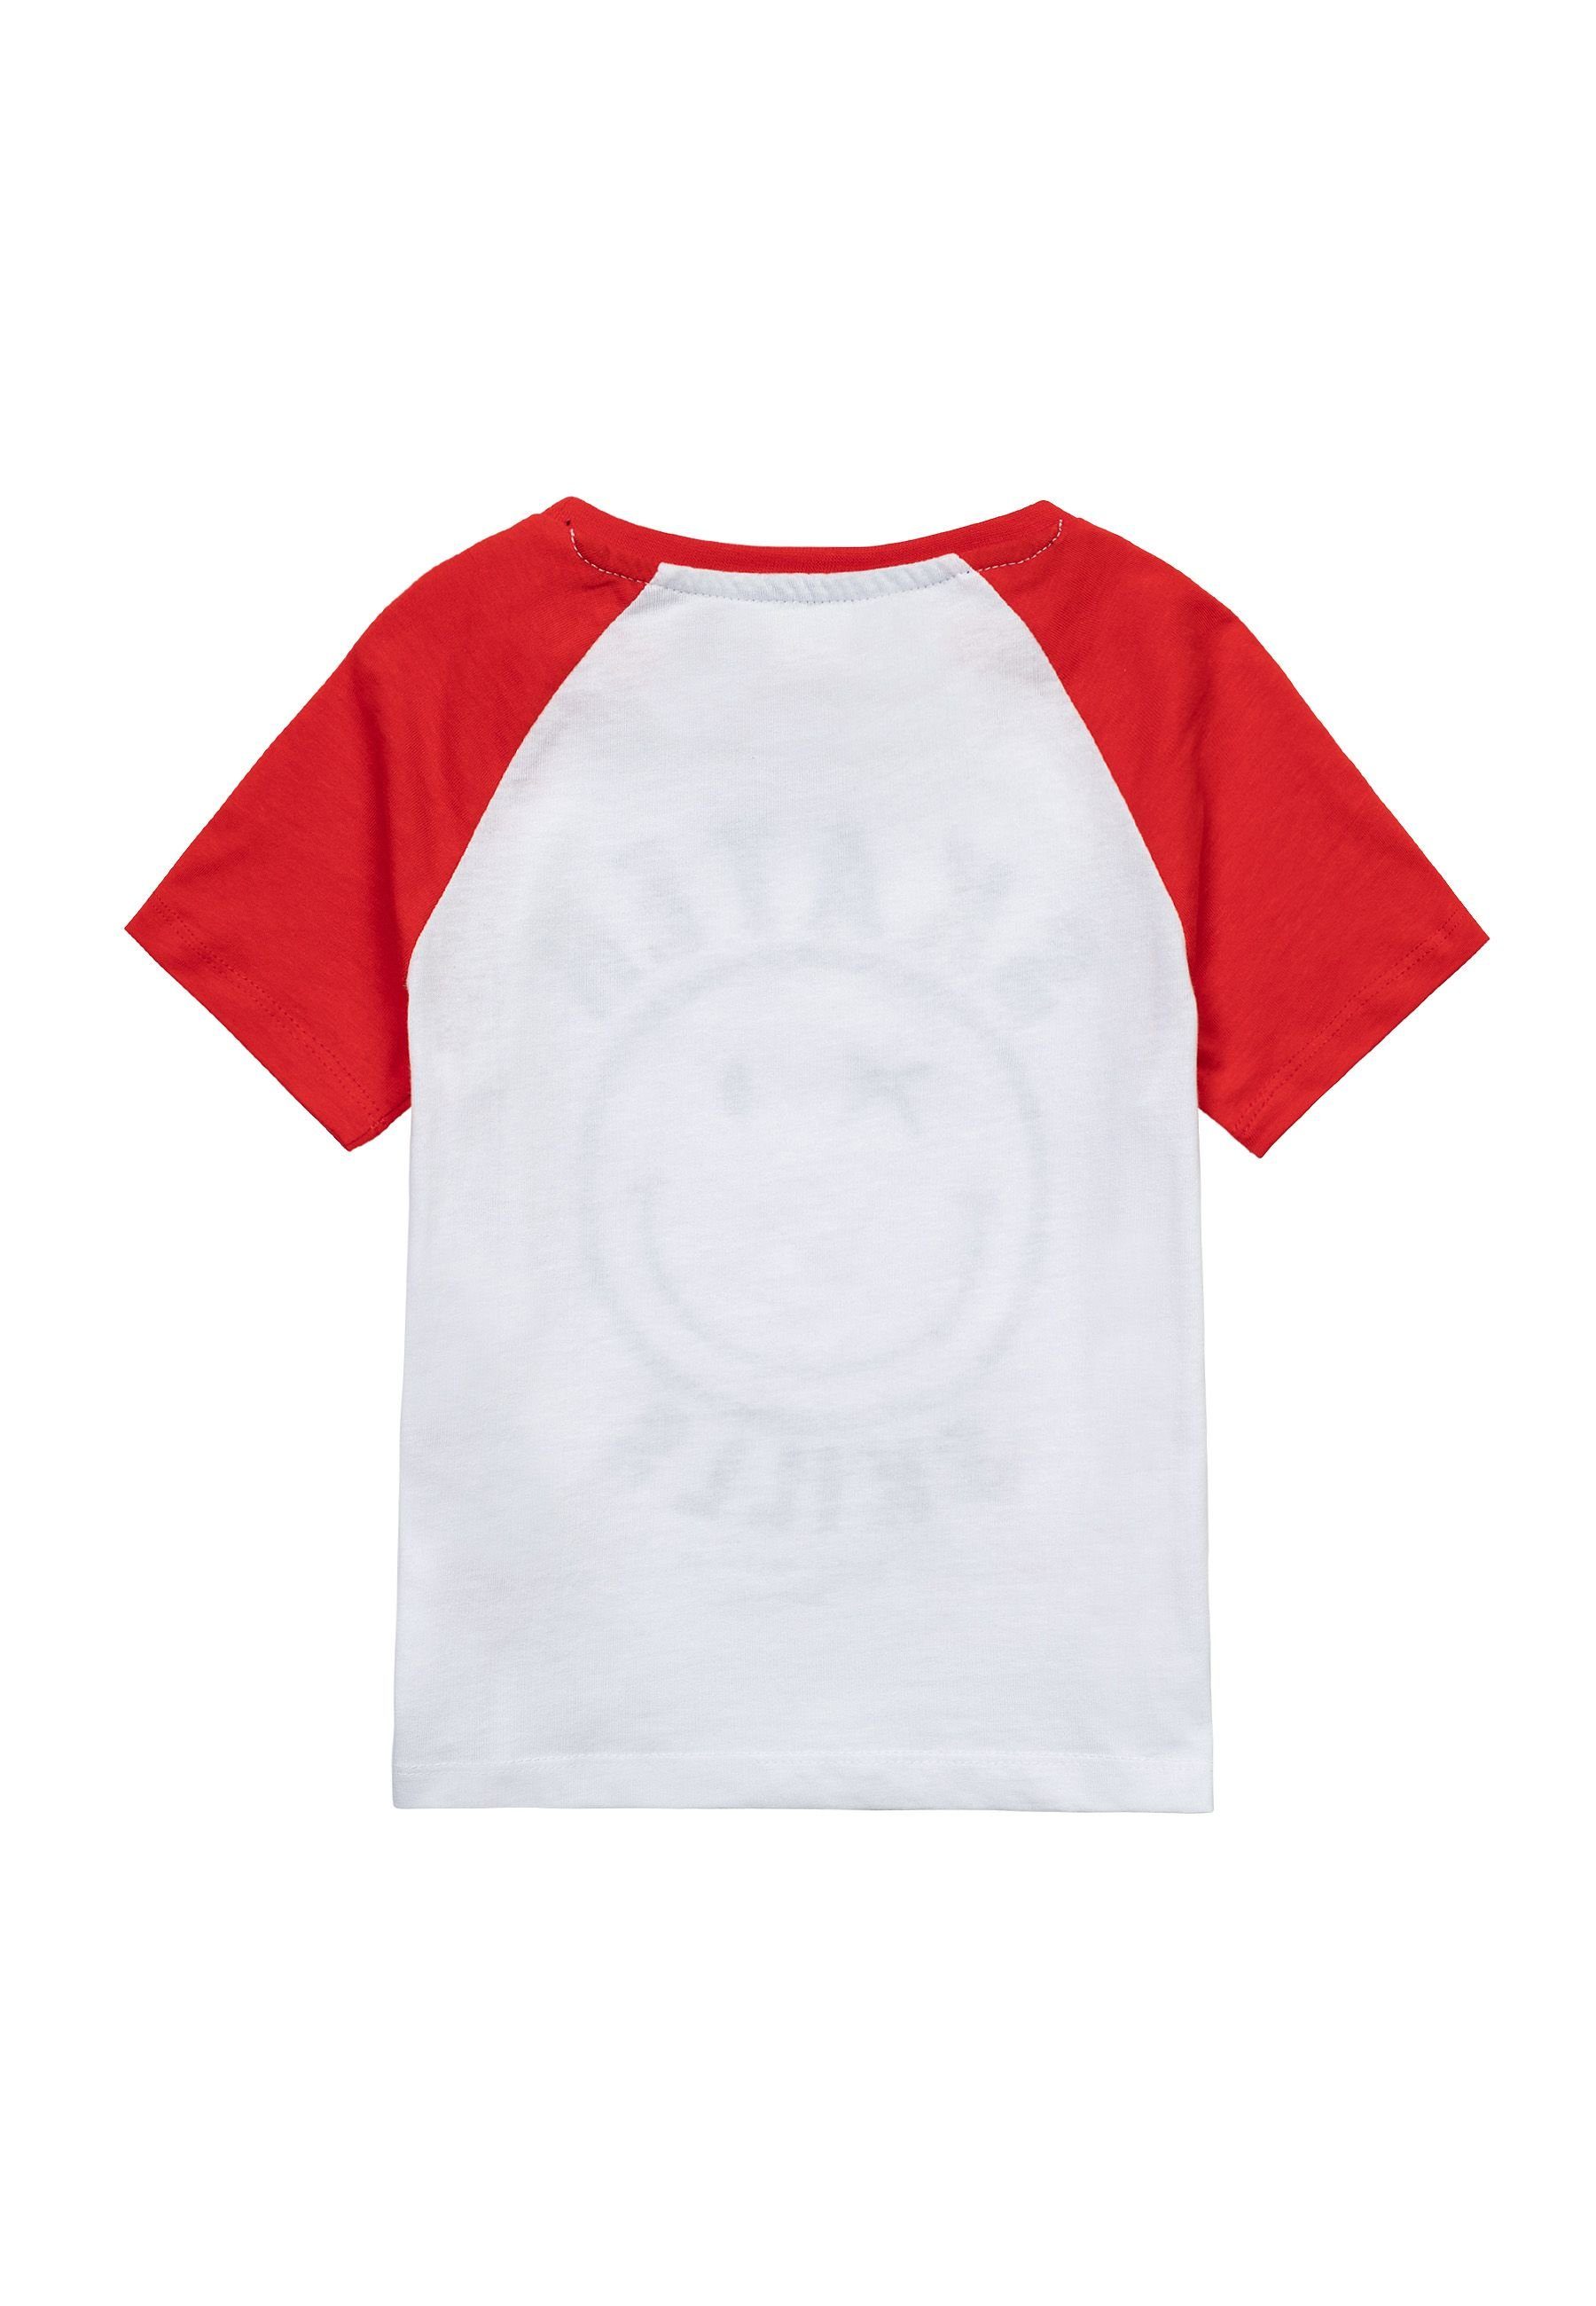 MINOTI T-Shirt Sommer T-Shirt Ärmeln Weiß bunten (3y-14y) mit